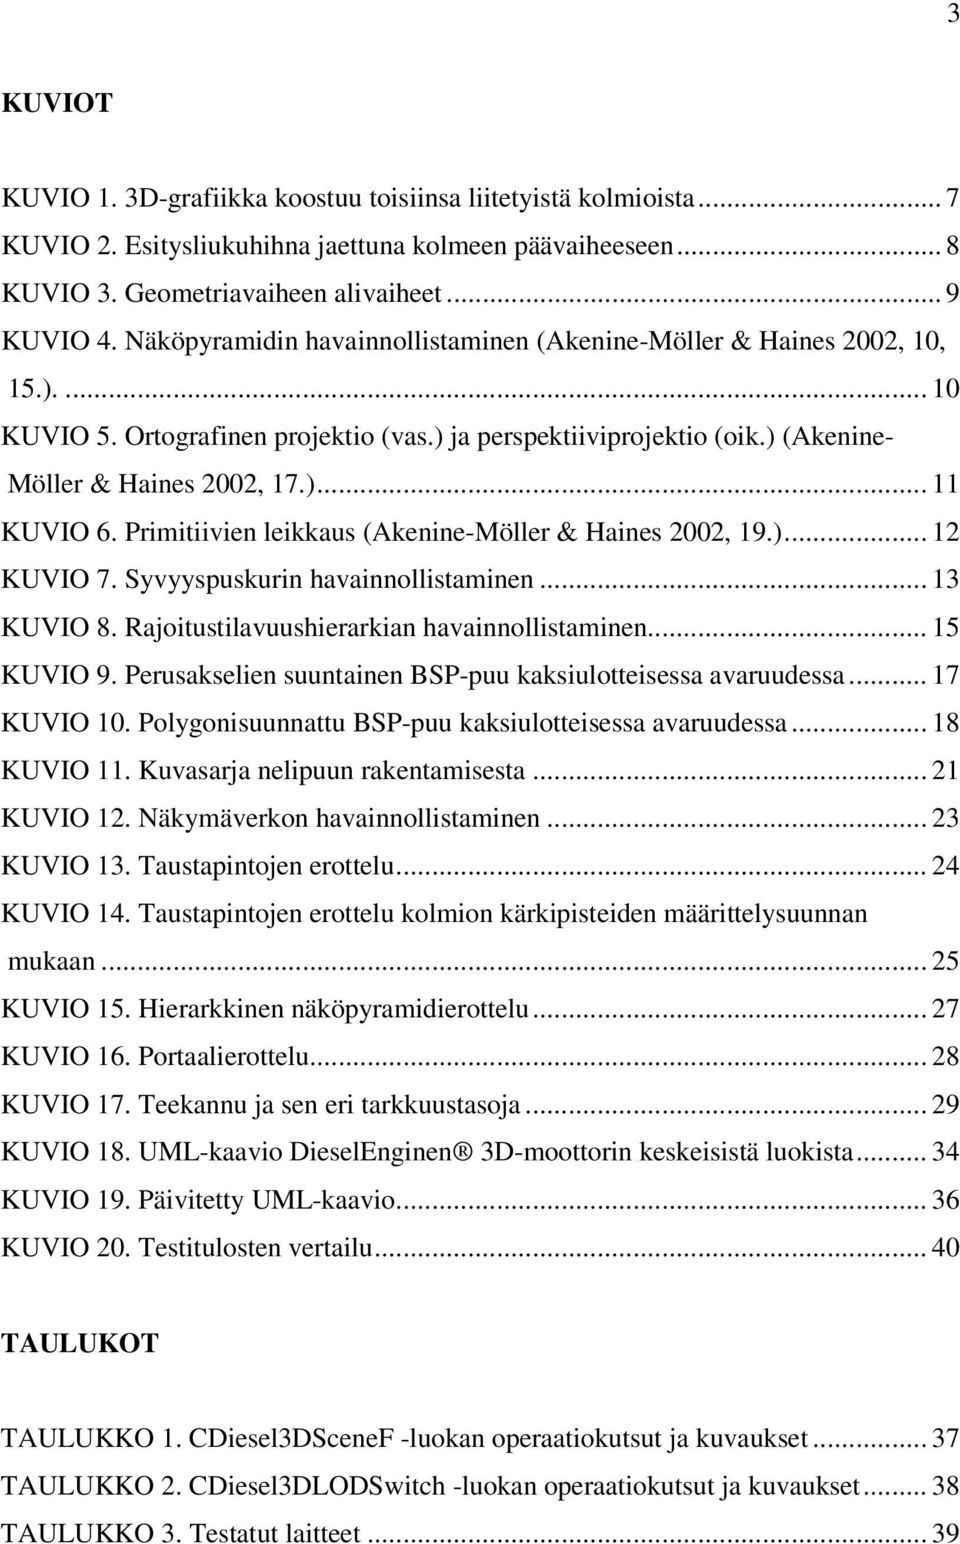 Primitiivien leikkaus (Akenine-Möller & Haines 2002, 19.)... 12 KUVIO 7. Syvyyspuskurin havainnollistaminen... 13 KUVIO 8. Rajoitustilavuushierarkian havainnollistaminen... 15 KUVIO 9.